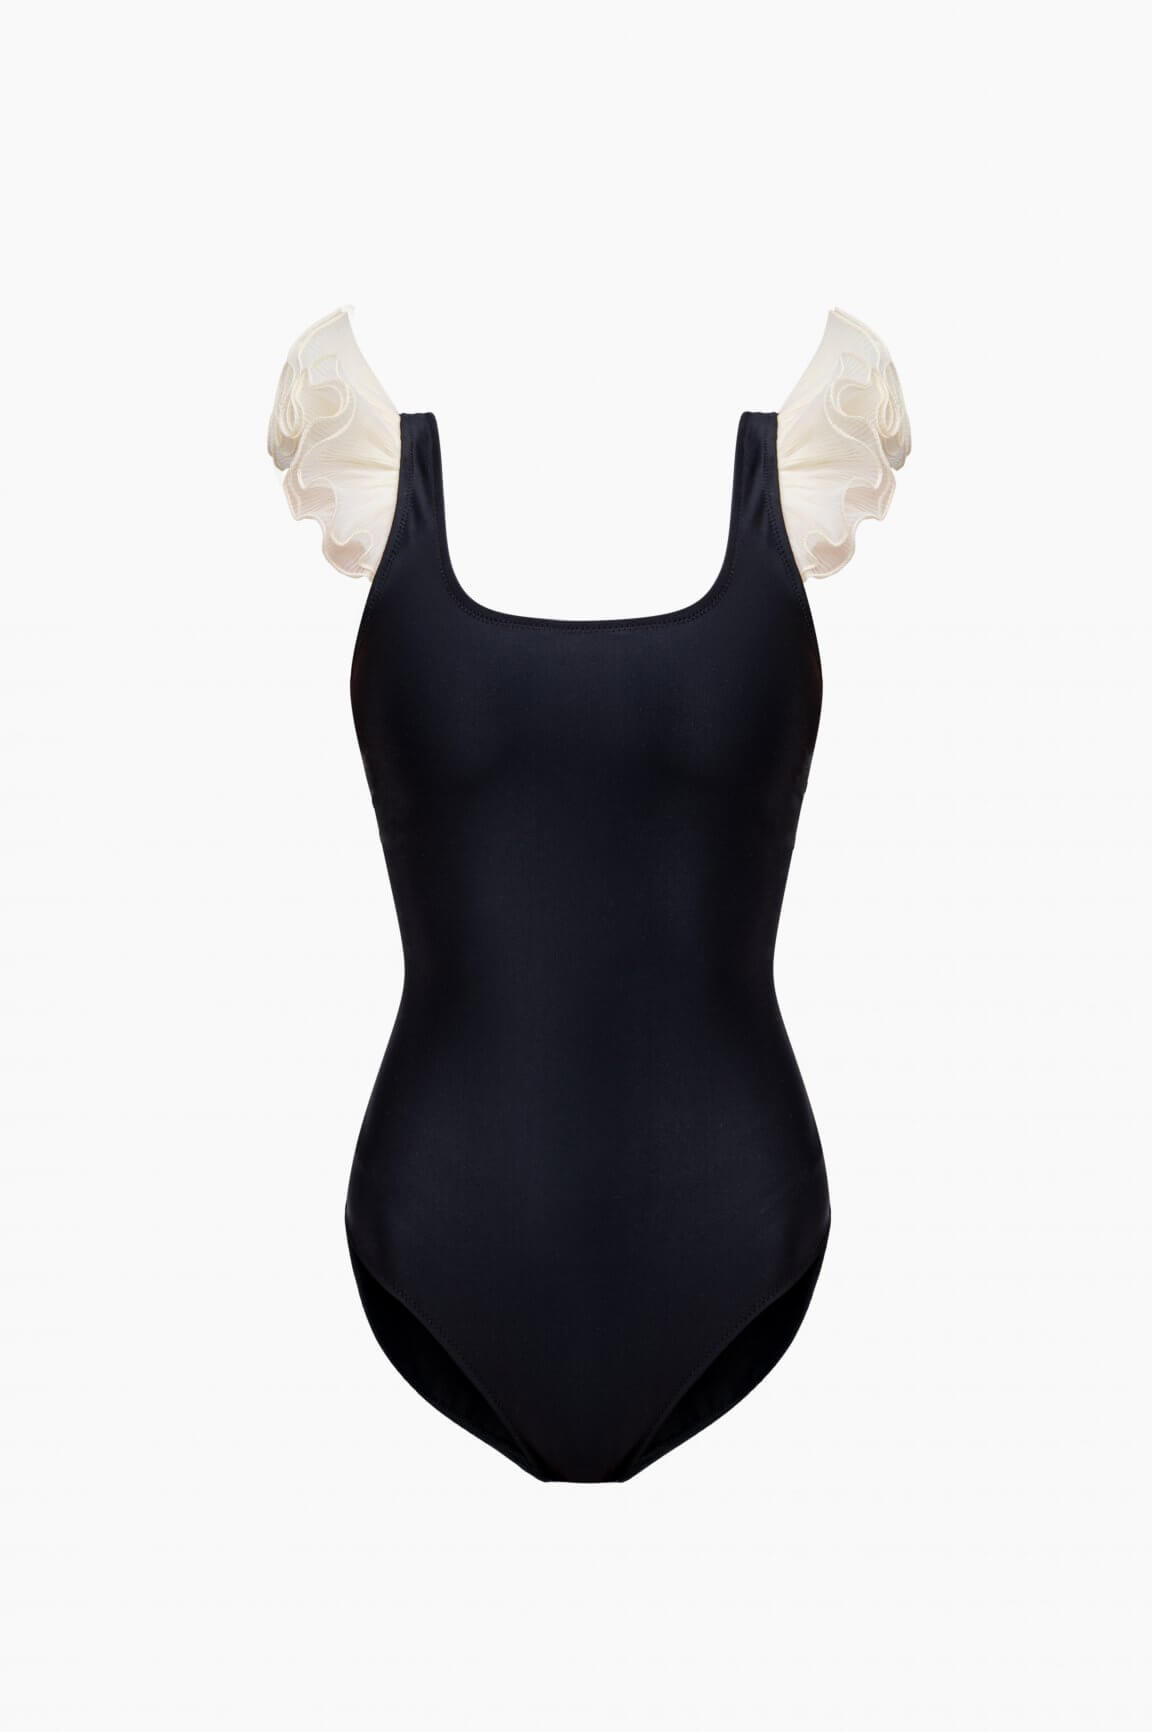 Sleeper Ariel Swimsuit with Ruffles in Black